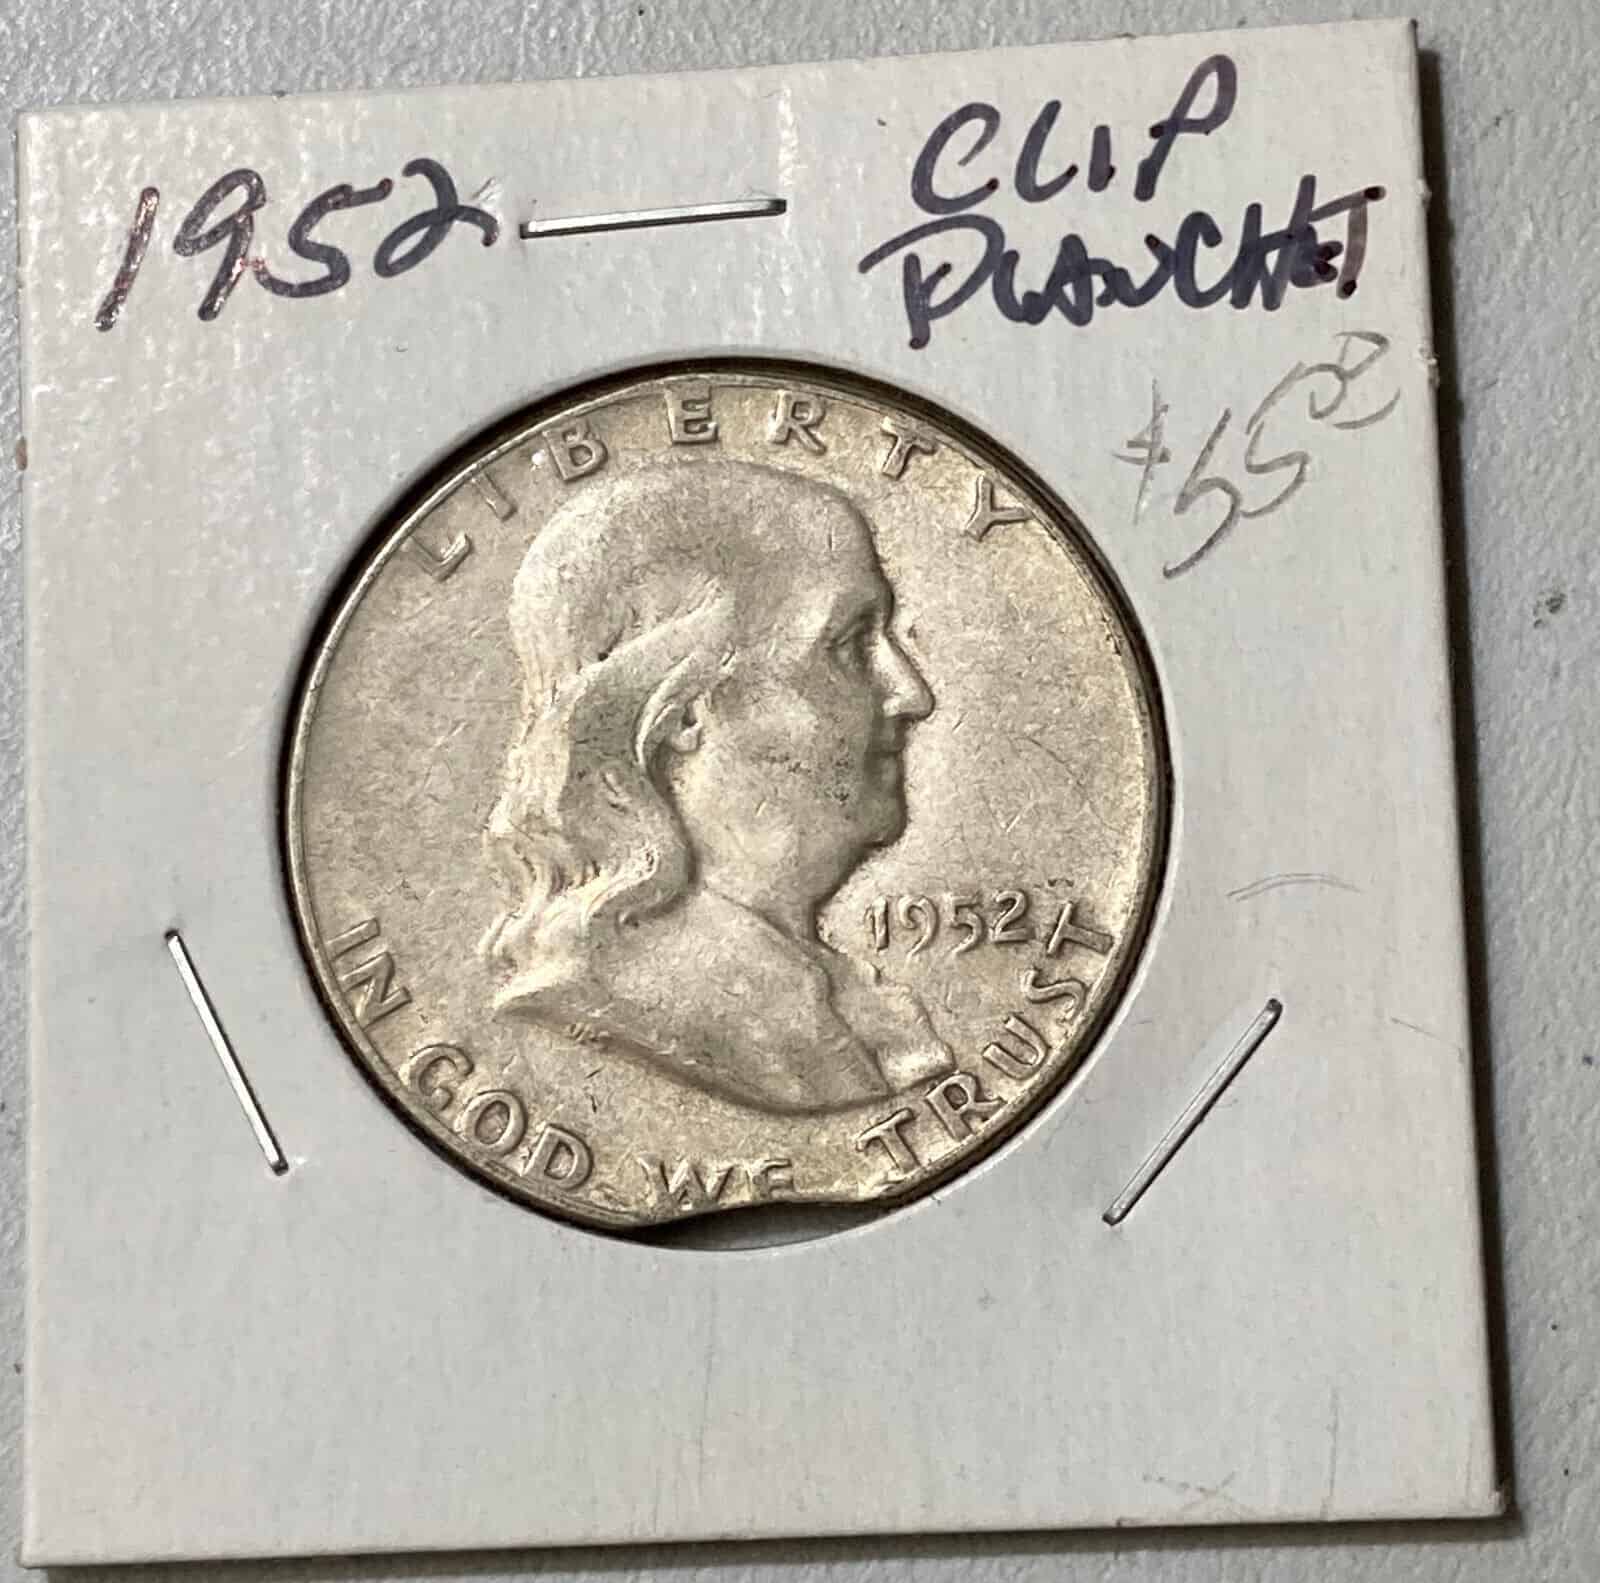 1952 Half Dollar Clipped Planchet